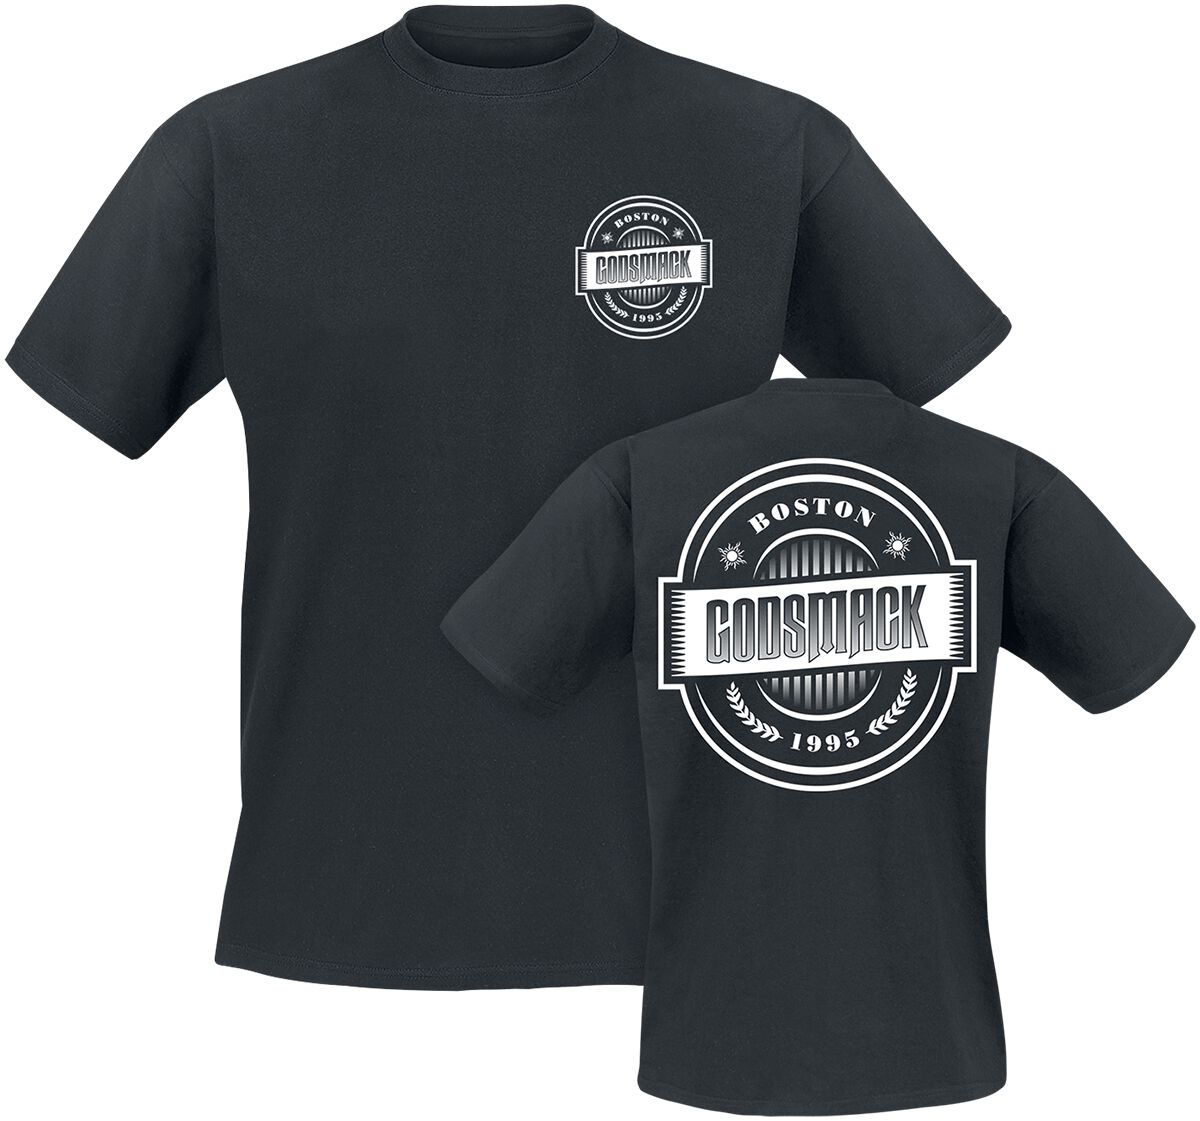 Godsmack T-Shirt - 1995 - S bis 3XL - für Männer - Größe L - schwarz  - Lizenziertes Merchandise!